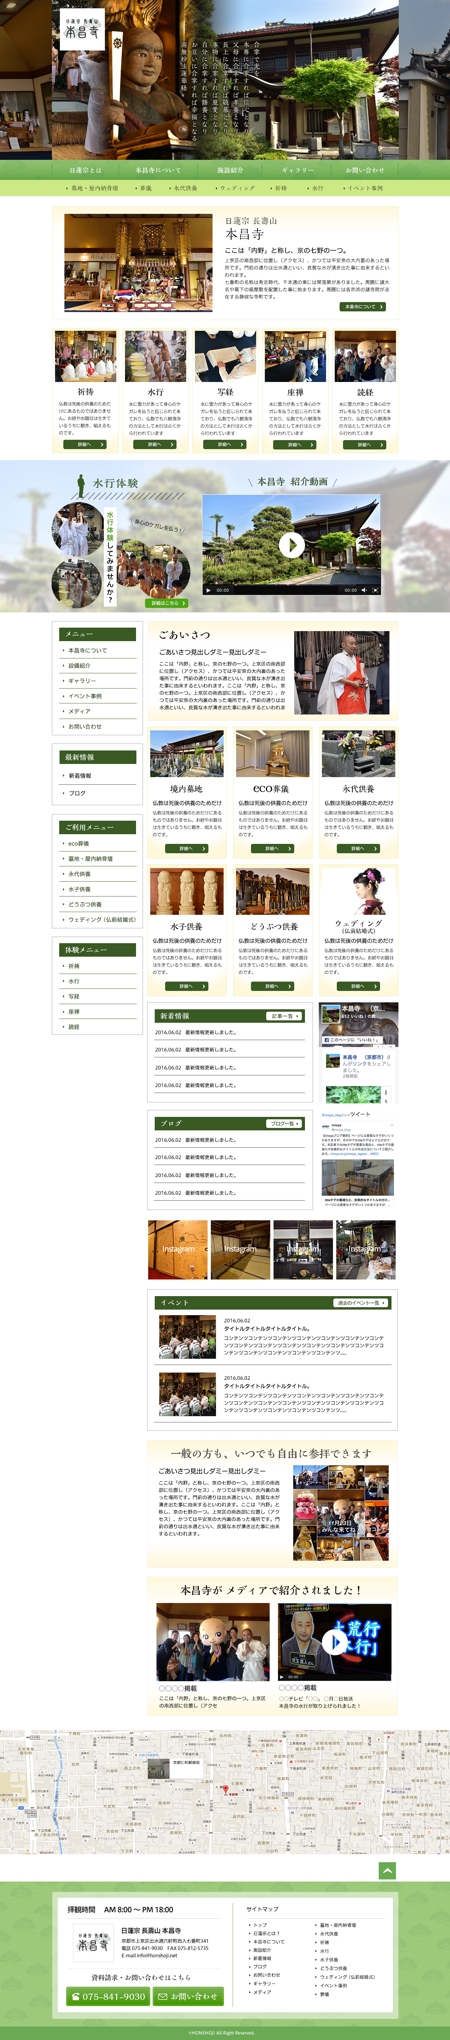 aman_7 (aman_7)さんのお寺のホームページデザイン募集 ※トップページ(1ページ)のみへの提案